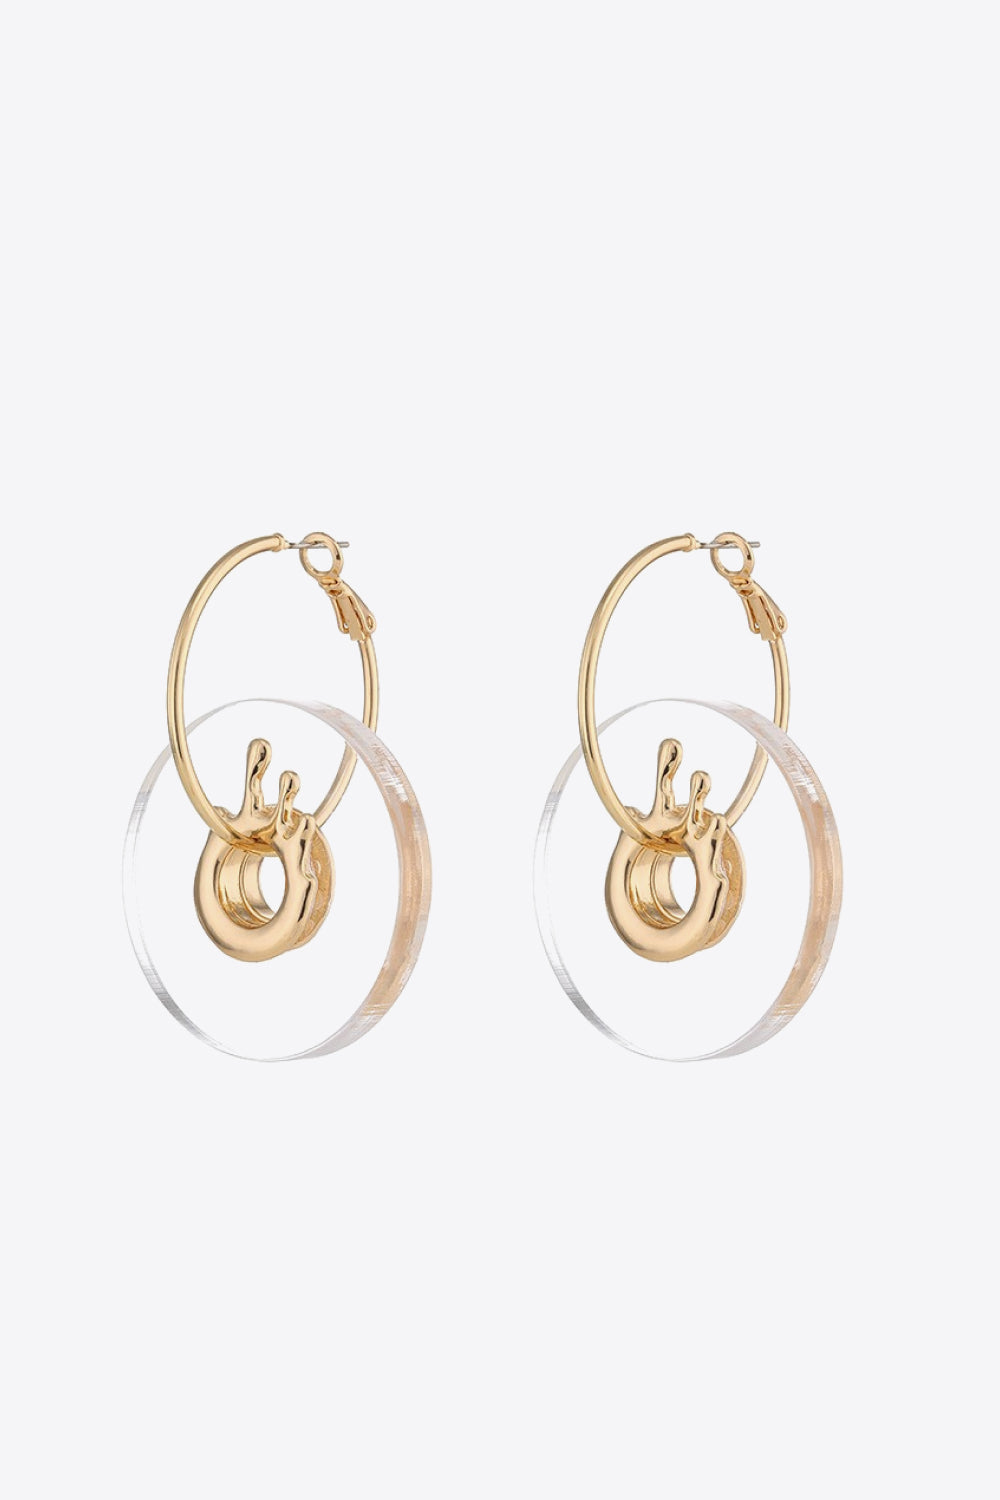 Contrast Hoop Drop Earrings - Earrings - FITGGINS